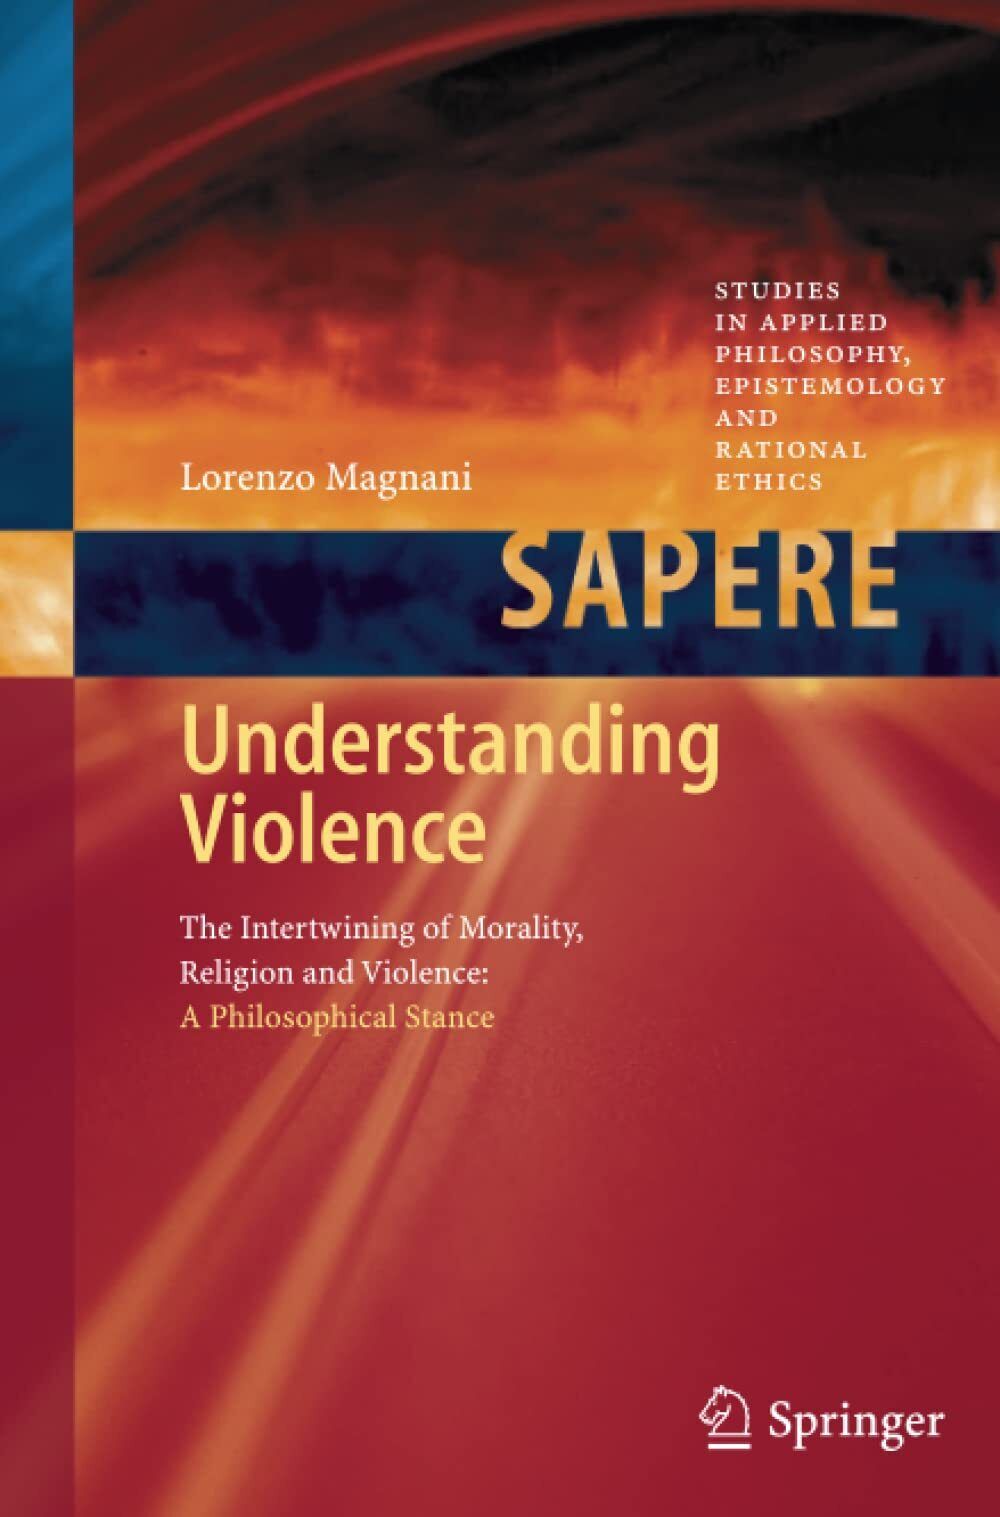 Understanding Violence - Lorenzo Magnani - Springer, 2013